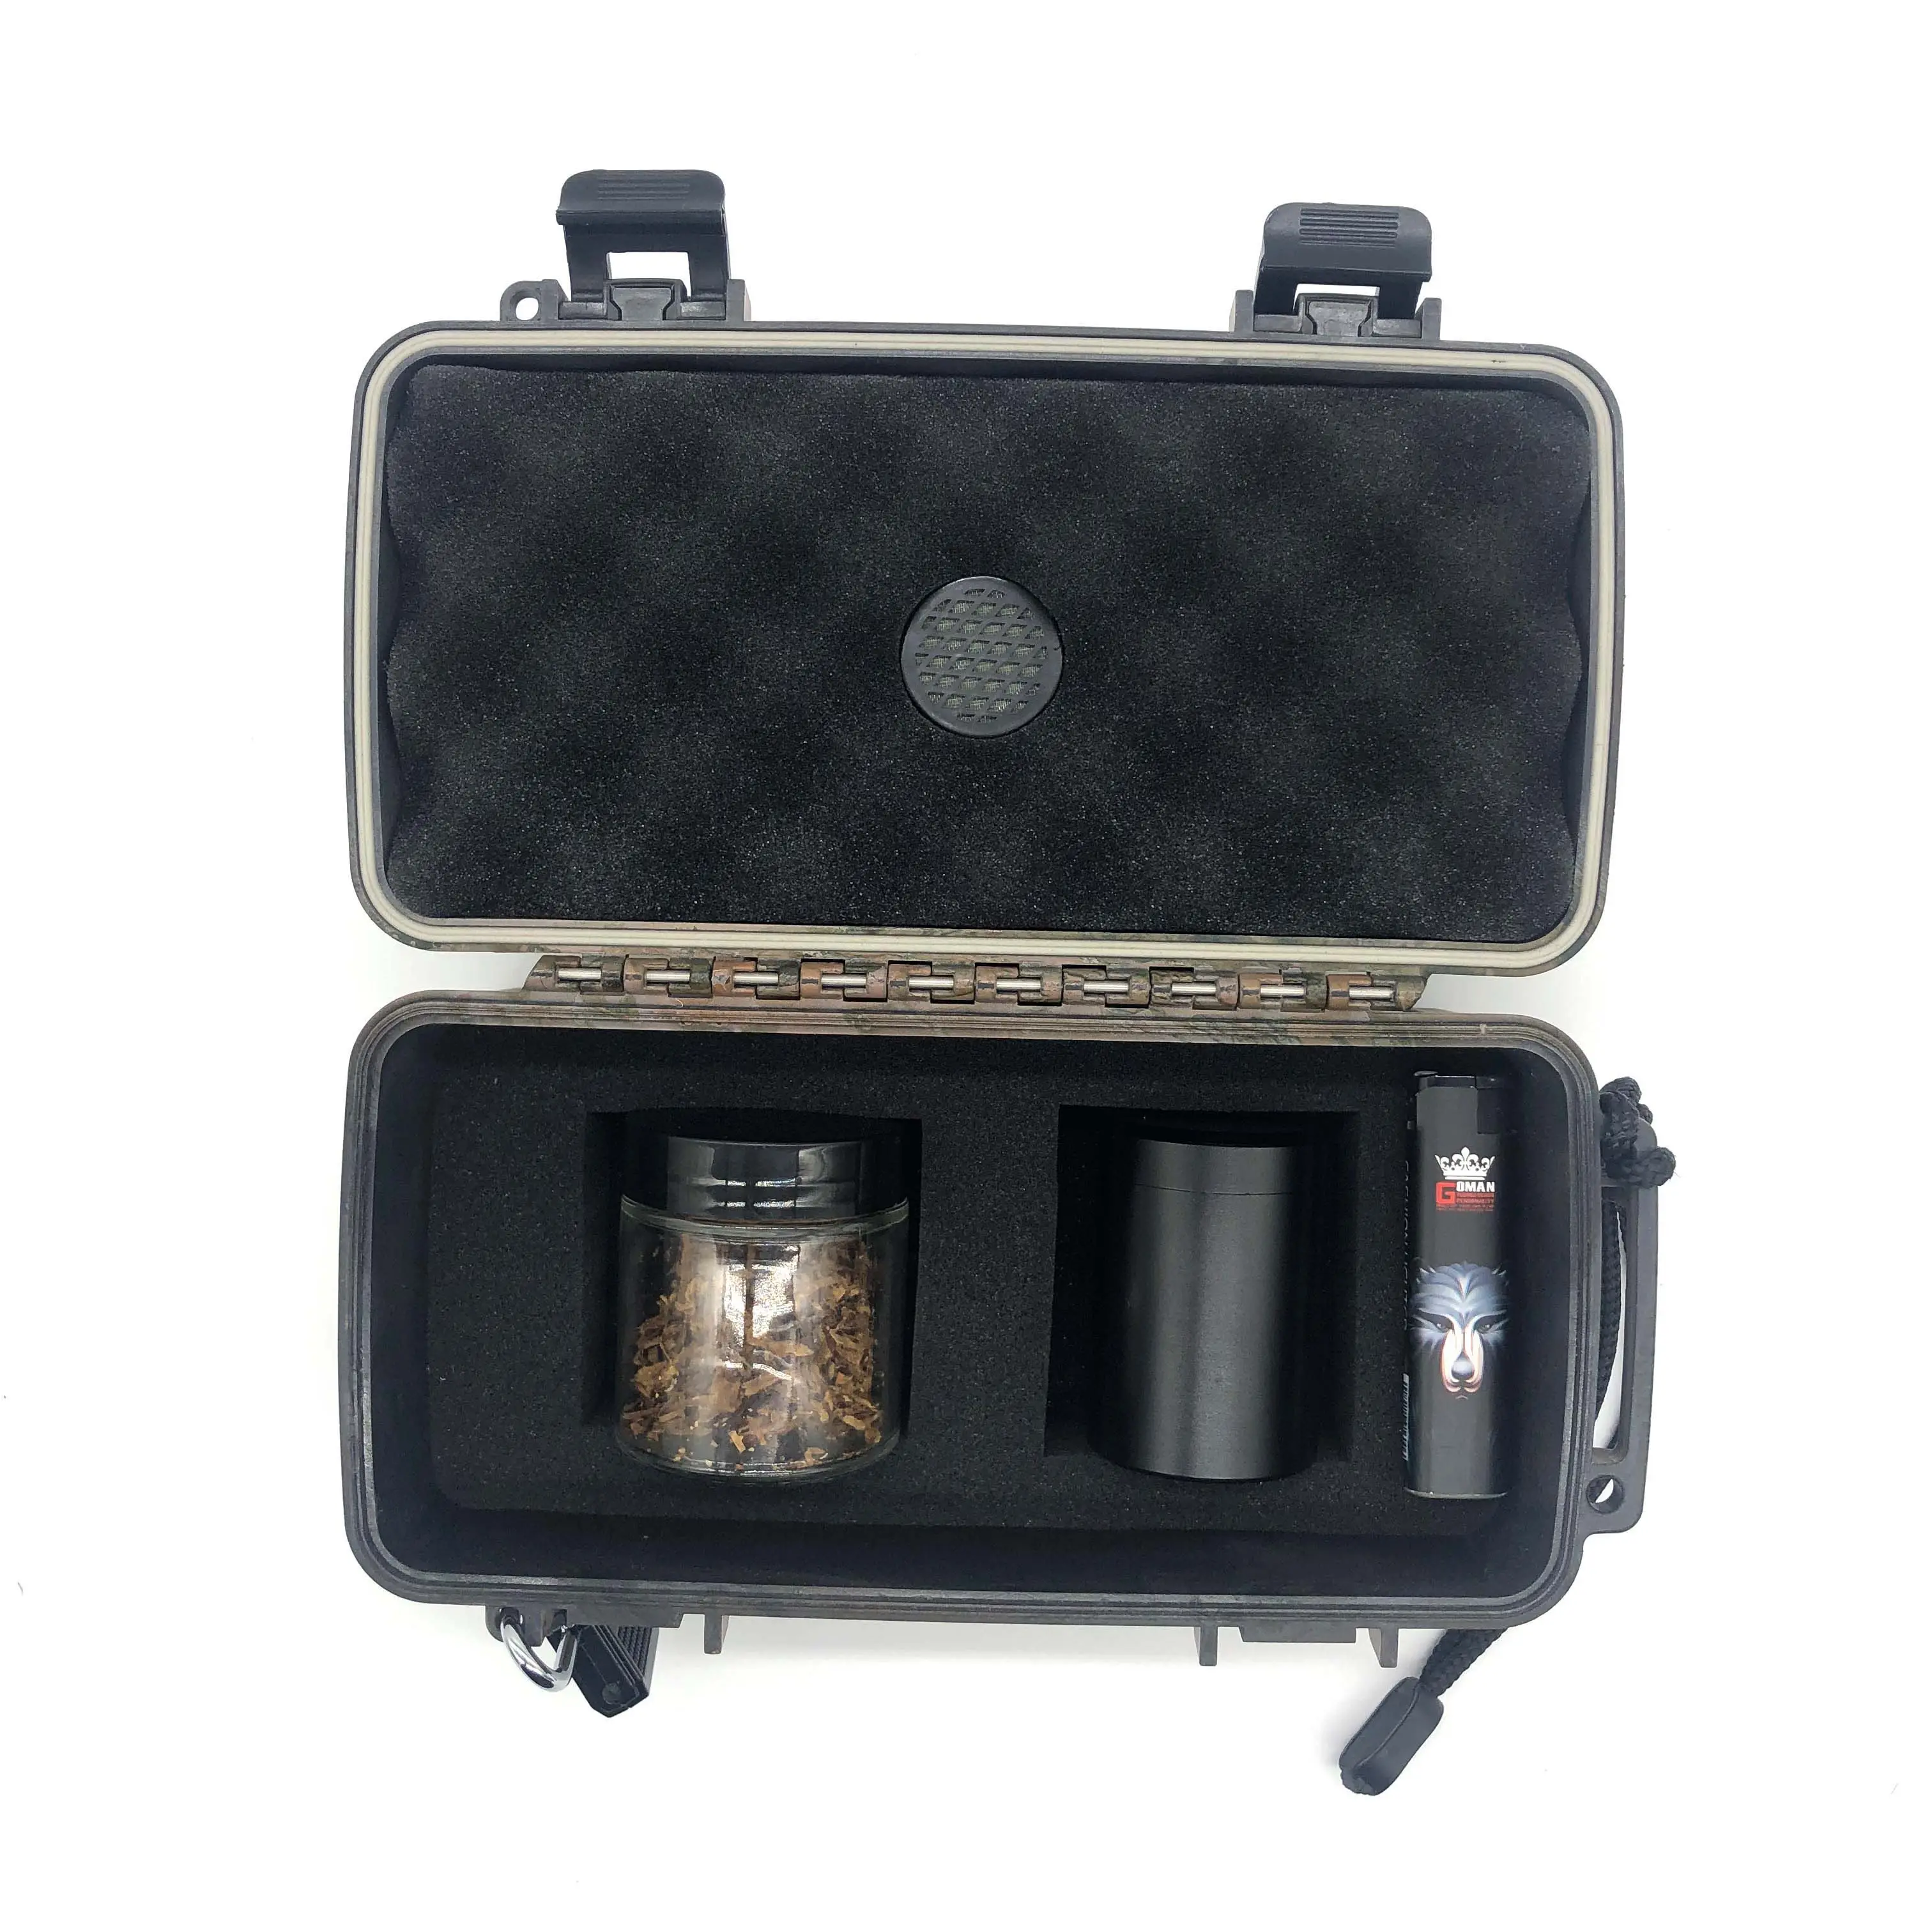 Kit de fumo personalizado de plástico, à prova d'água com logotipo personalizado, caixa para fumo, ervas e moedor